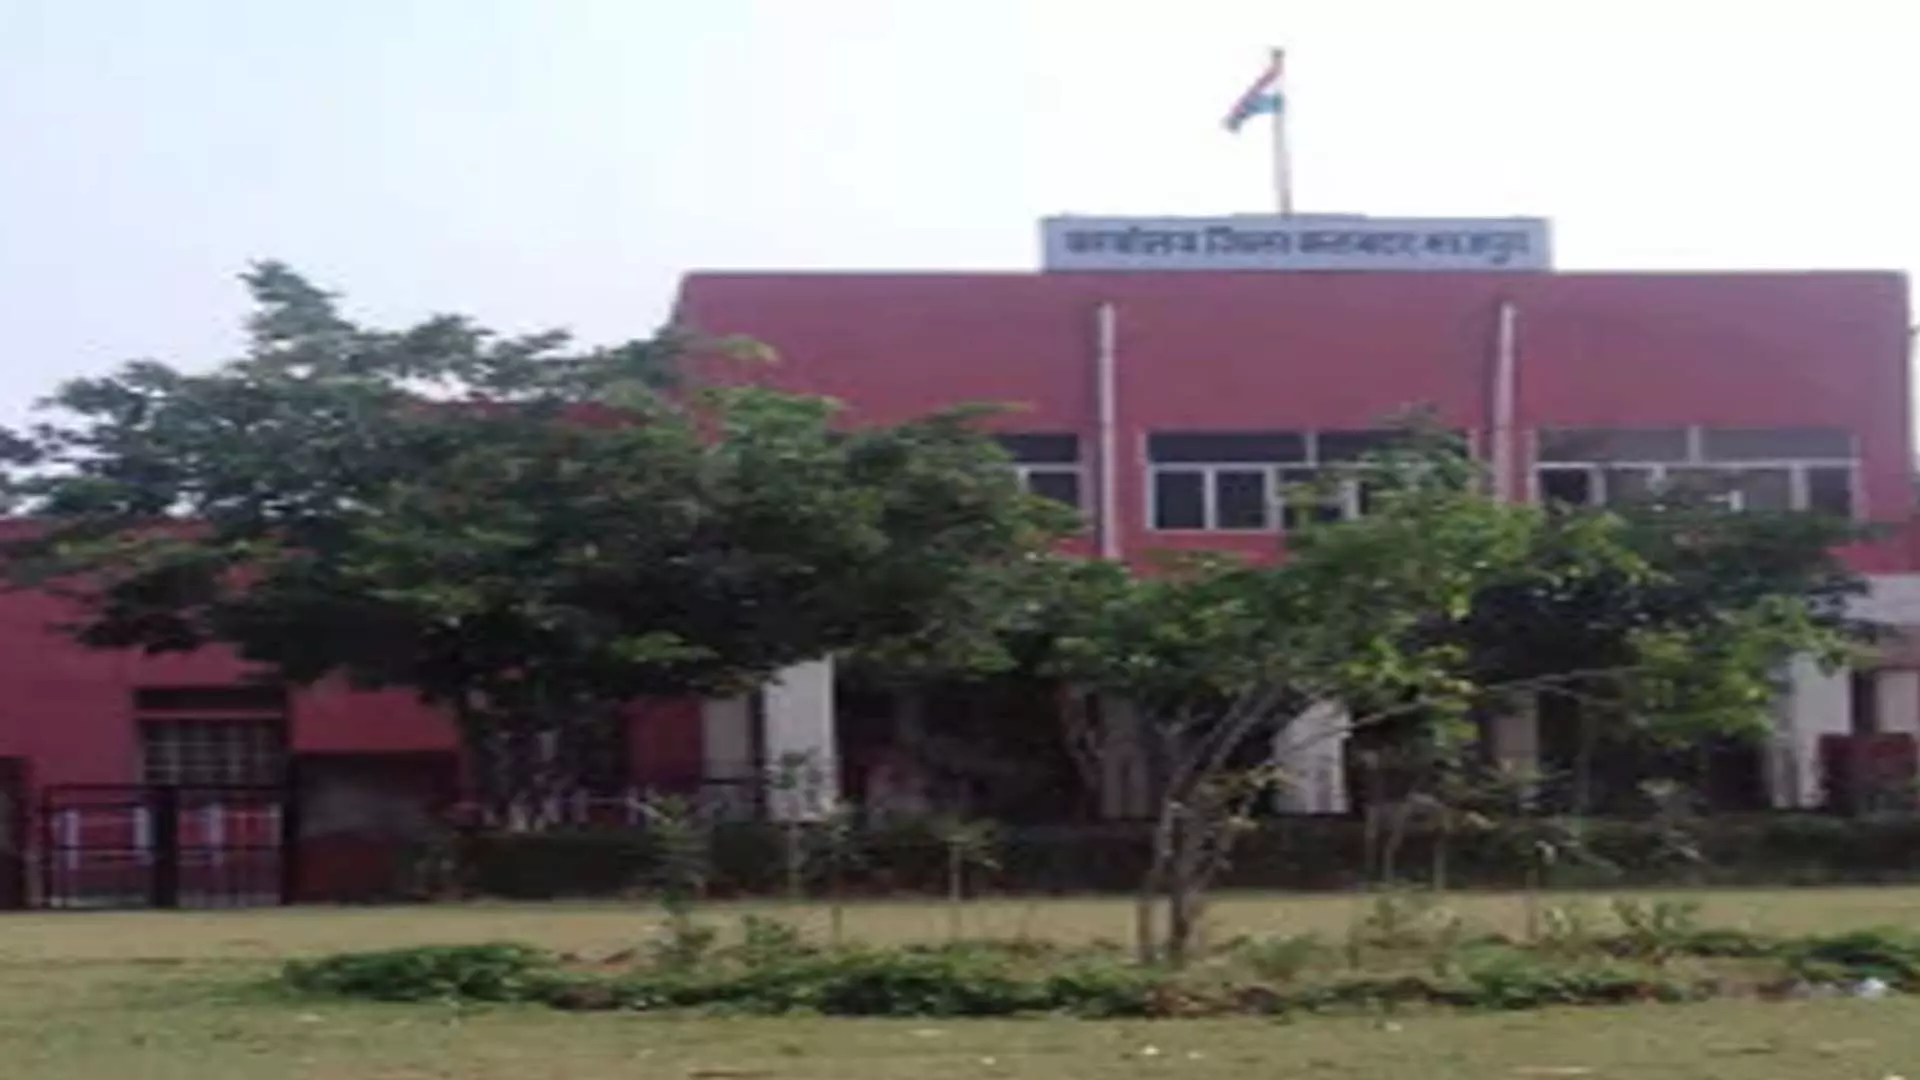 भरतपुर में 9 NEET परीक्षा केंद्र खोले गए और परीक्षा दिशानिर्देश जारी किए गए